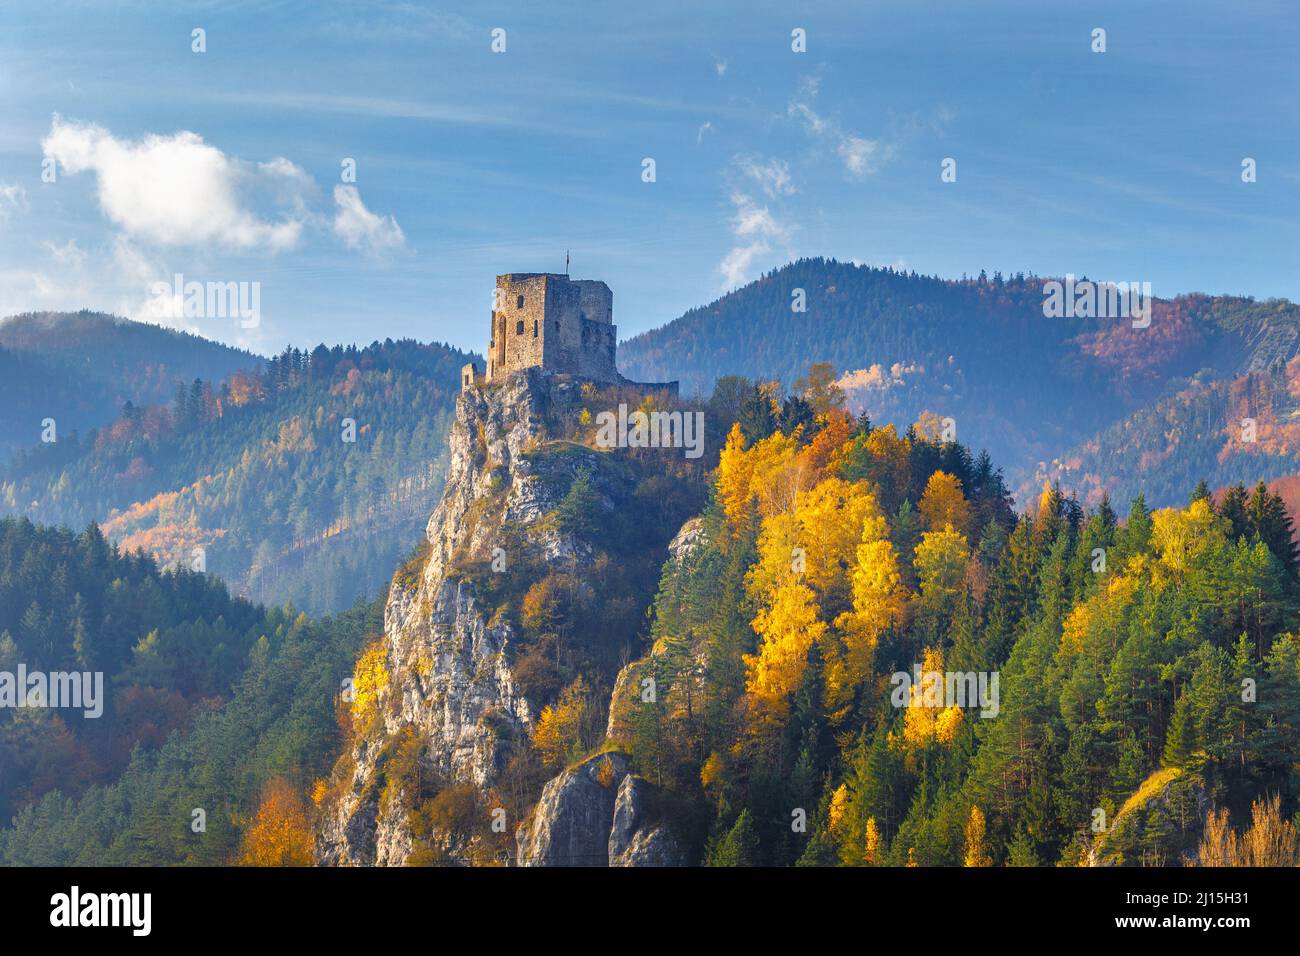 Château médiéval de Strecno dans le paysage de montagne d'automne, Slovaquie, Europe. Banque D'Images